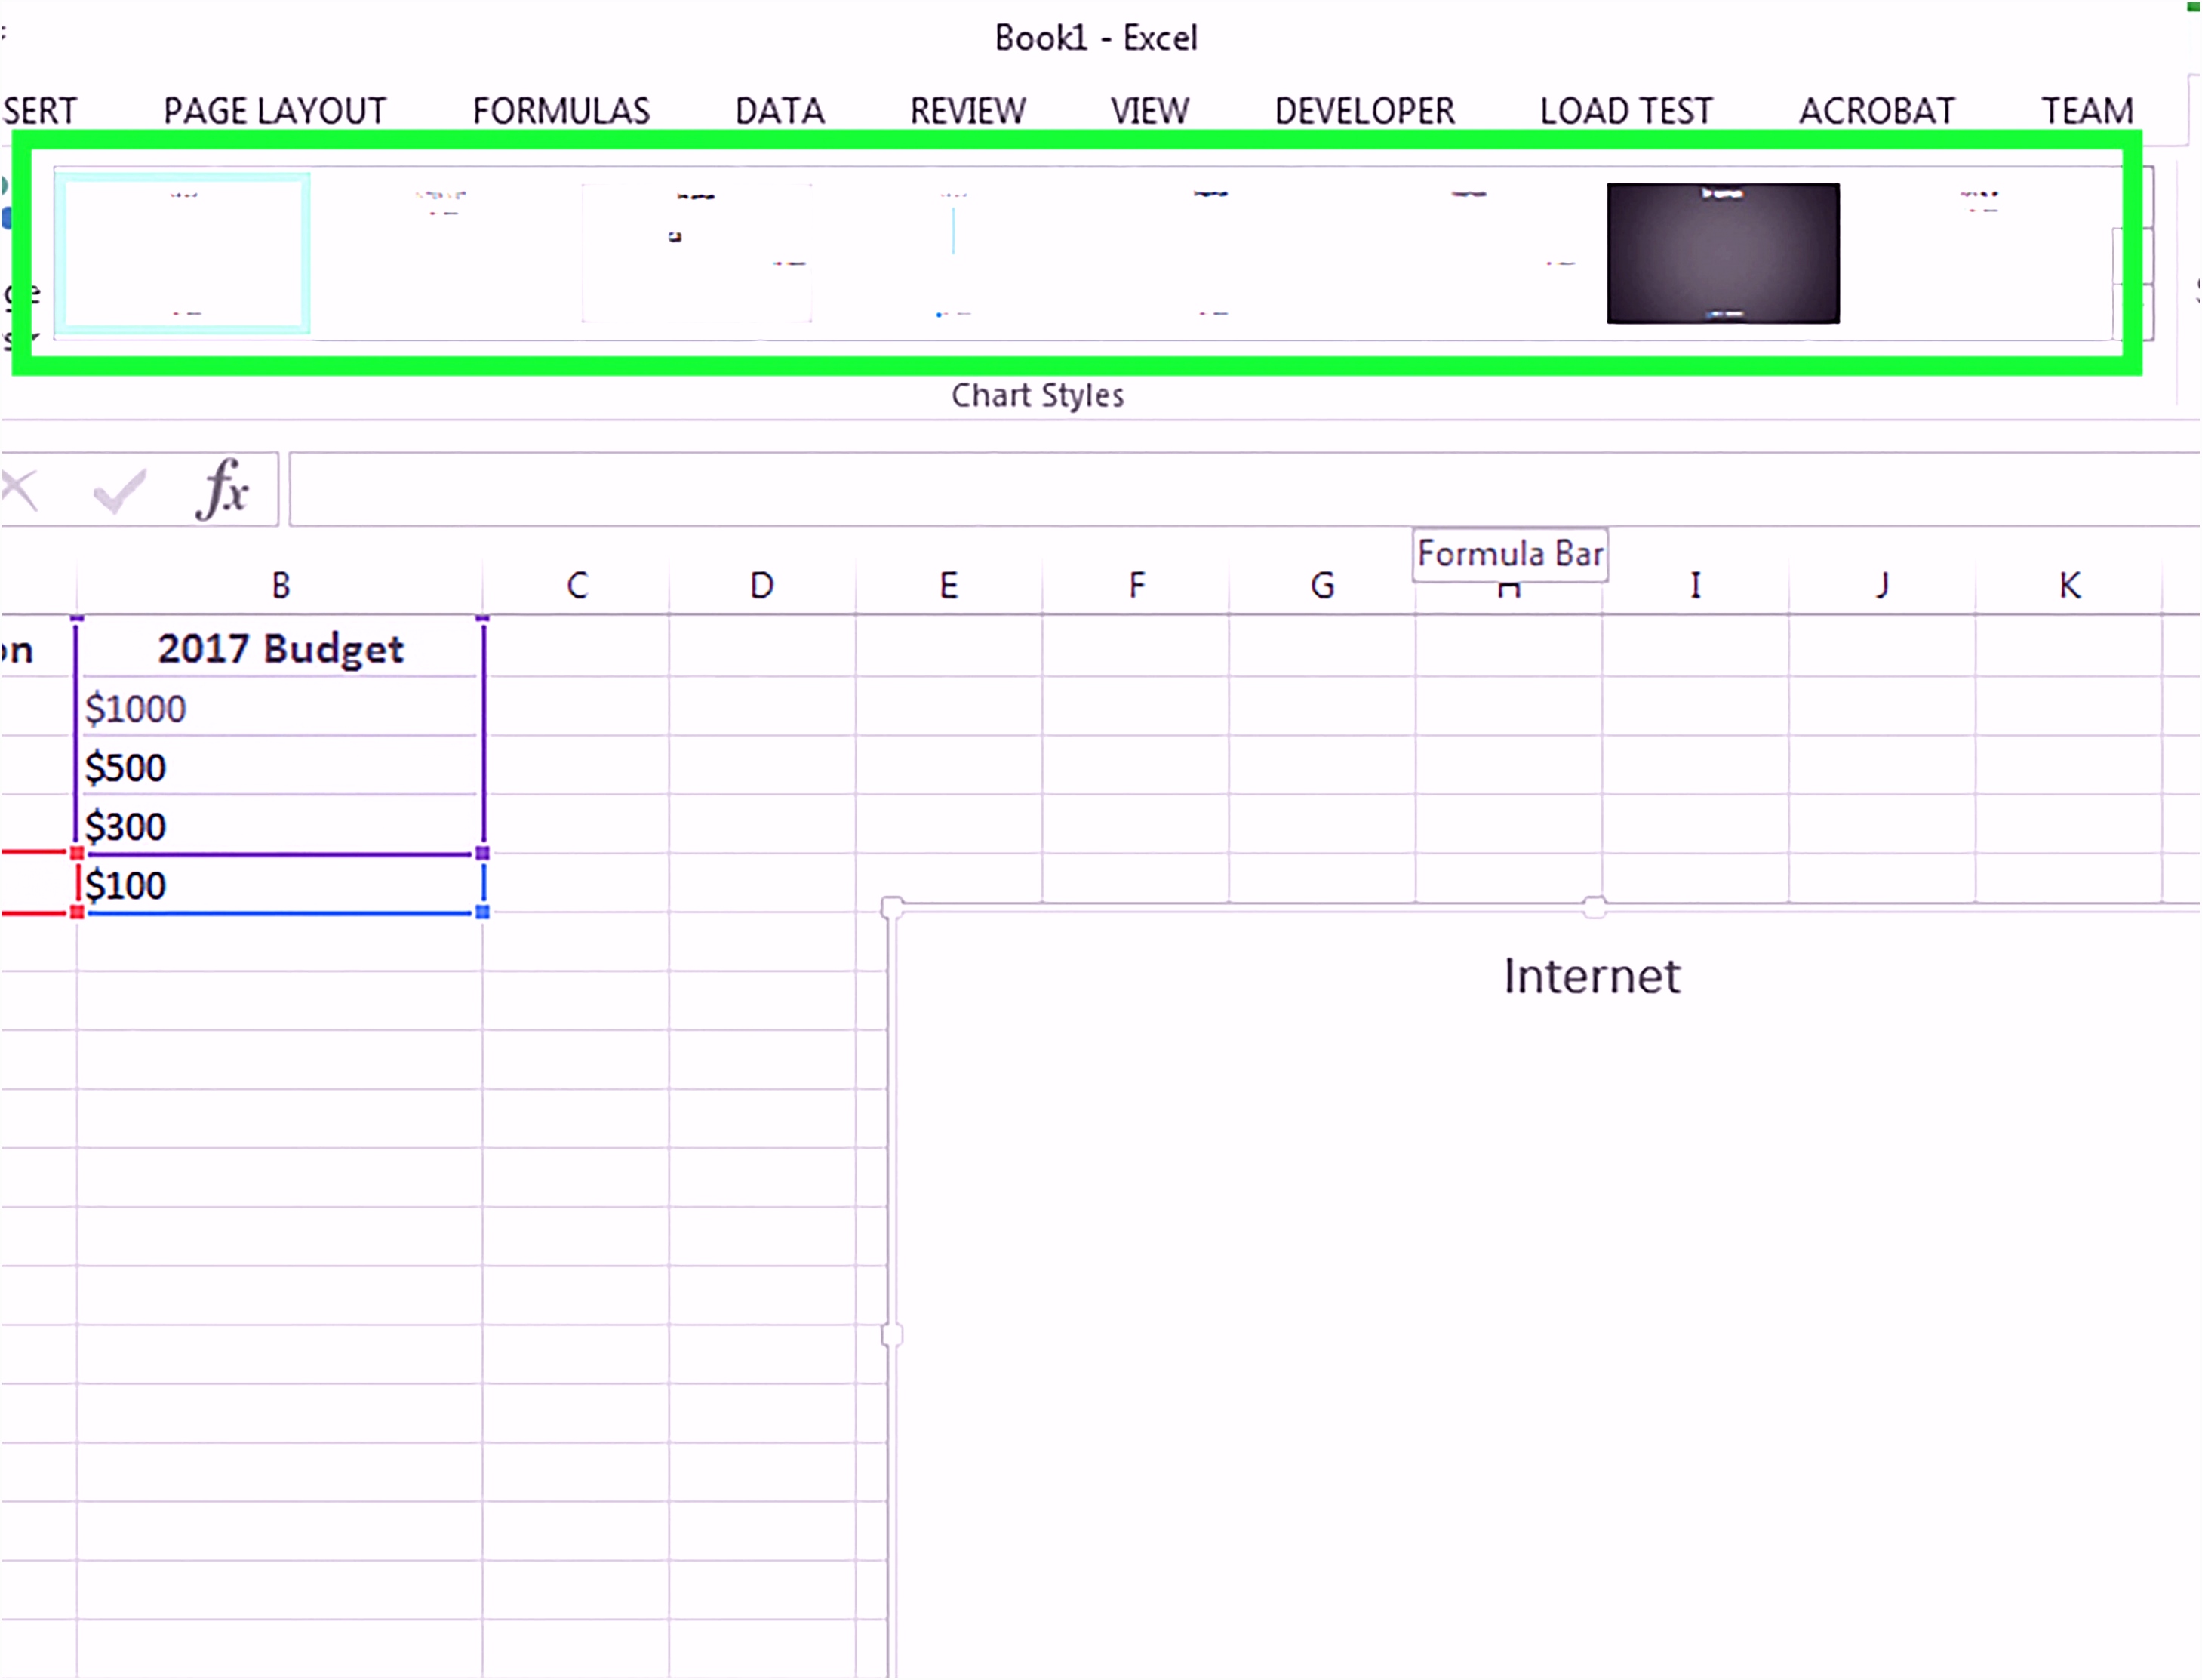 9 organigramm Vorlage Excel - SampleTemplatex1234 ...